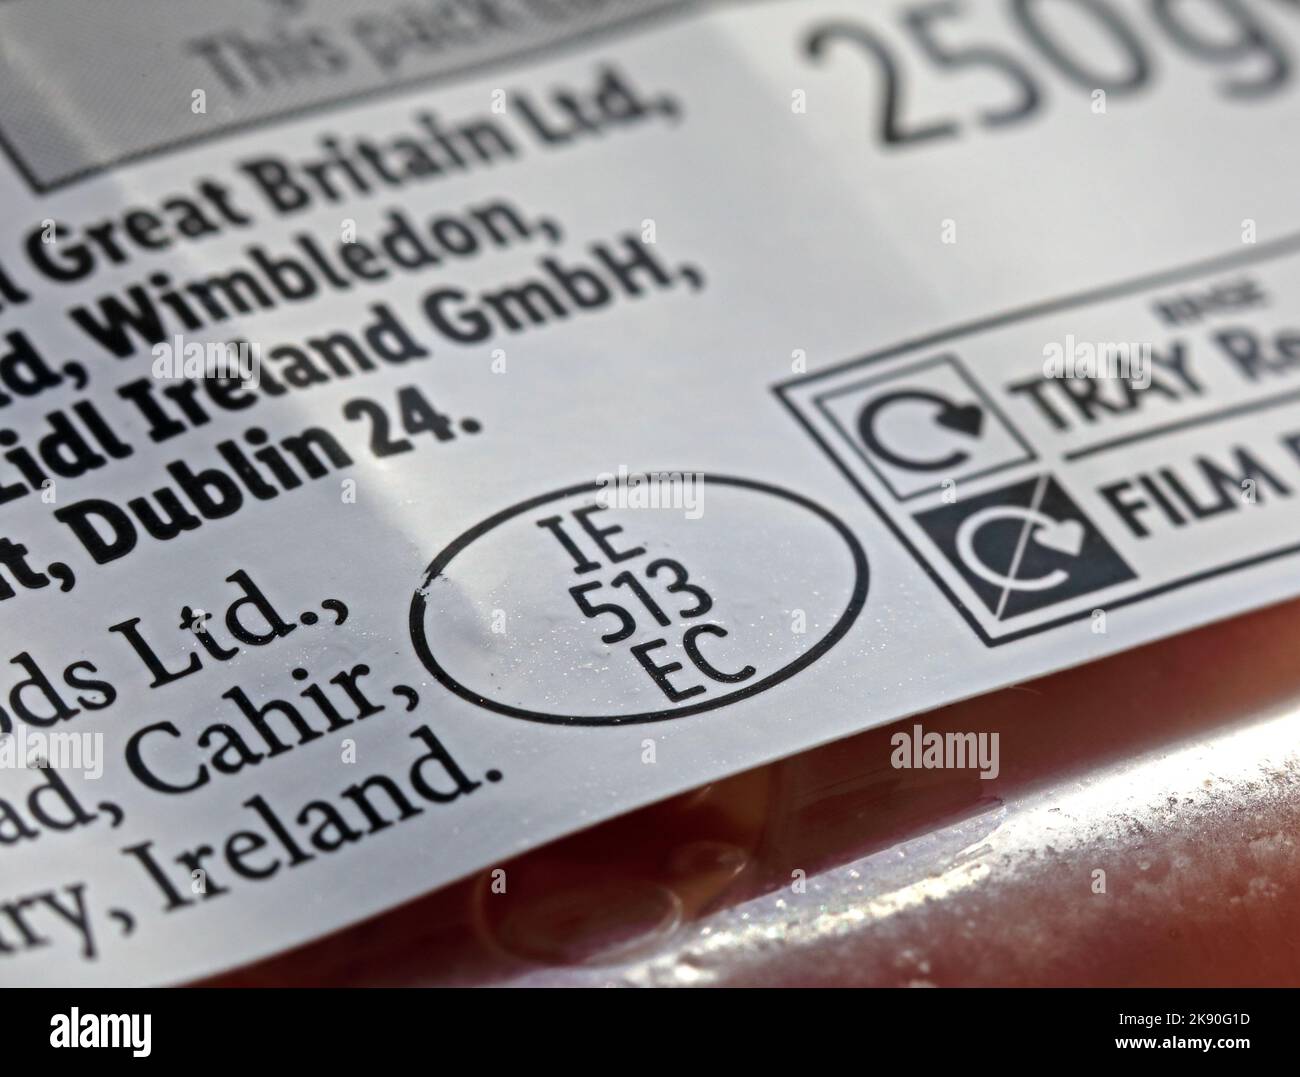 Viande marque d'origine européenne, sur le bacon irlandais IE 513 EC, contrôles alimentaires sur les emballages de supermarché Banque D'Images